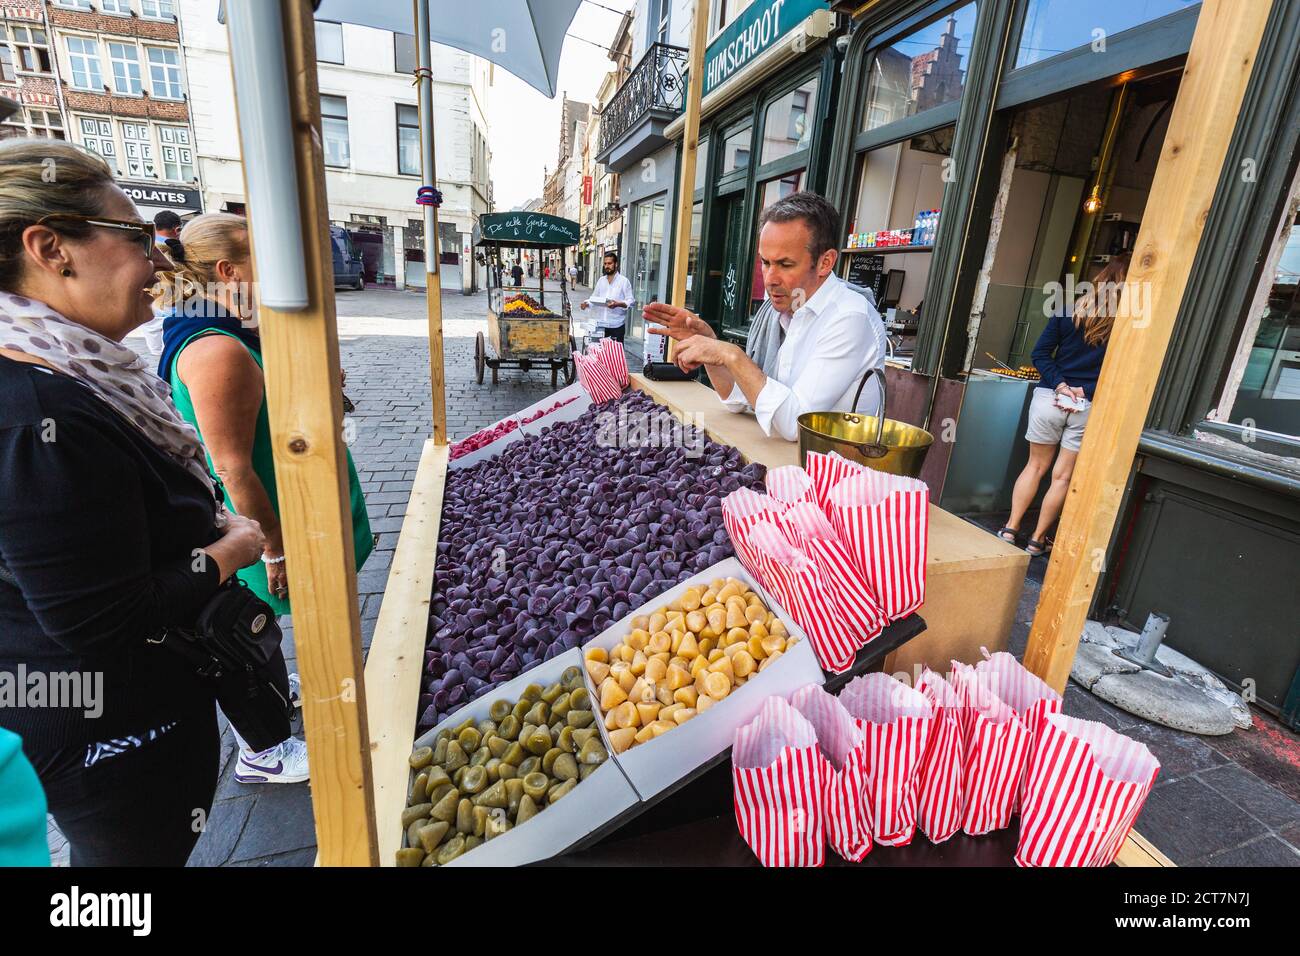 Man vend des bonbons traditionnels belges célèbres, le couberdon. Gand, Belgique - juillet 29 2018. Banque D'Images